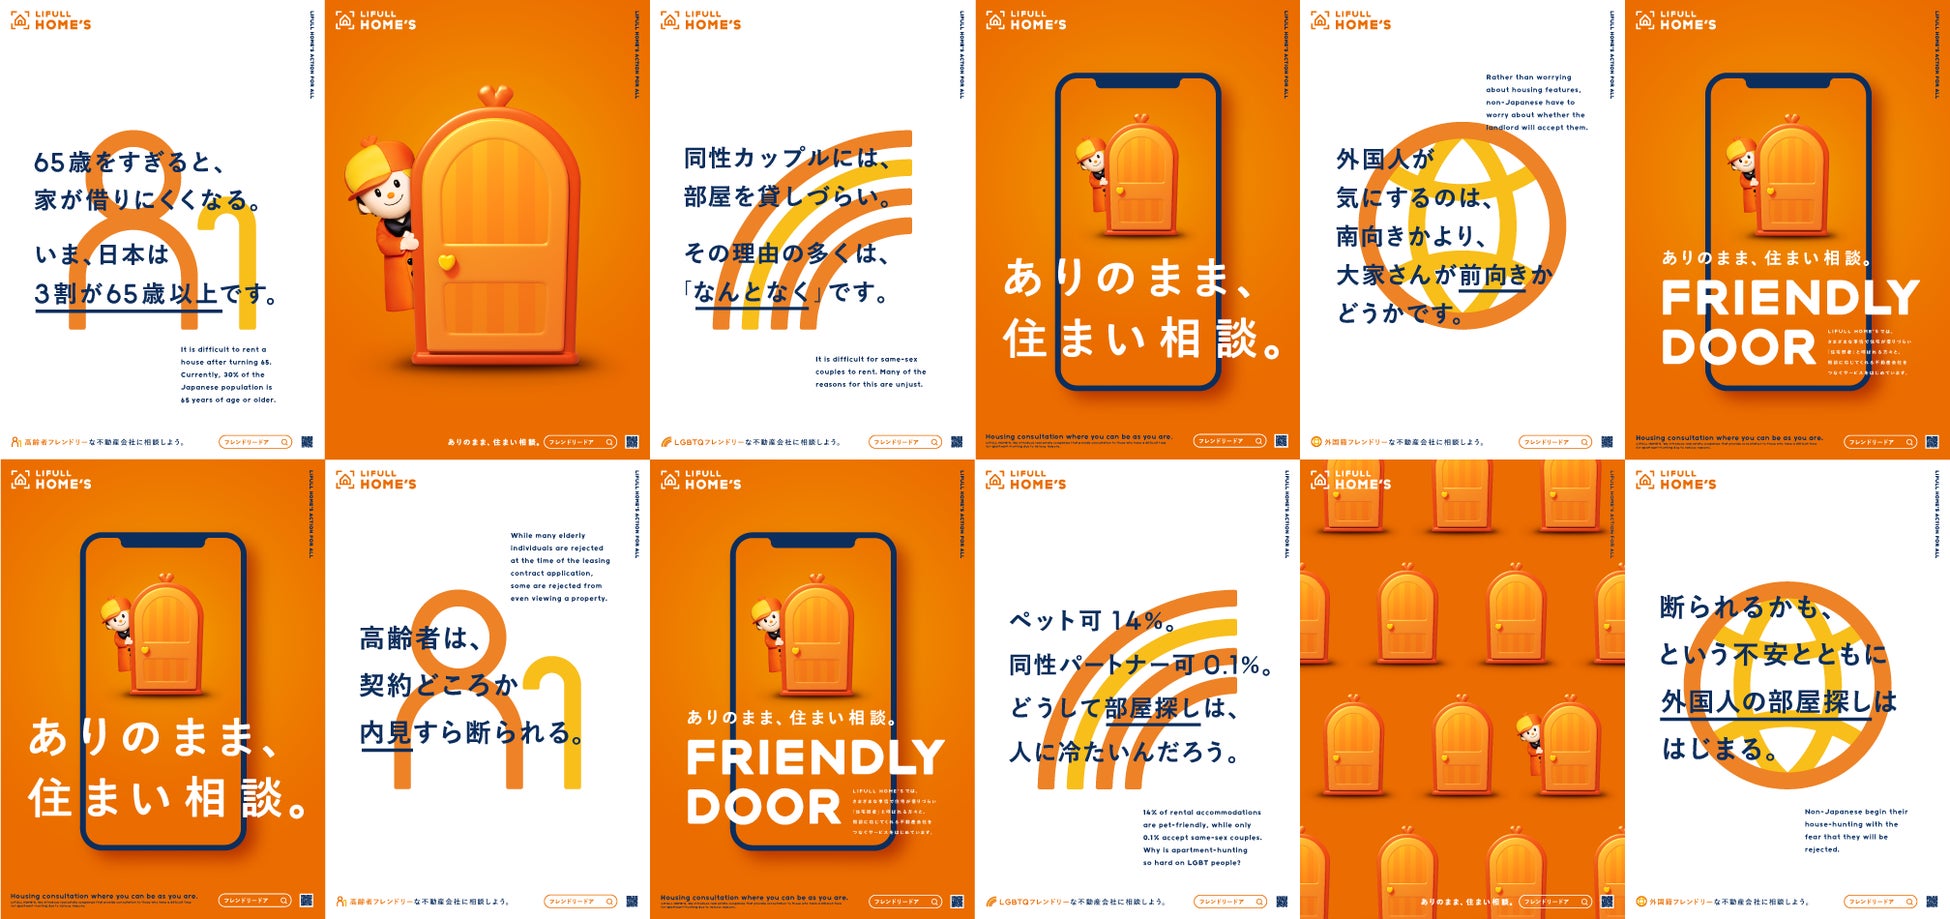 住宅弱者問題の解決を目指す「LIFULL HOME'S FRIENDLY DOOR」が『ACC TOKYO CREATIVITY AWARDS』マーケティング・エフェクティブネス部門でグランプリを受賞のサブ画像1